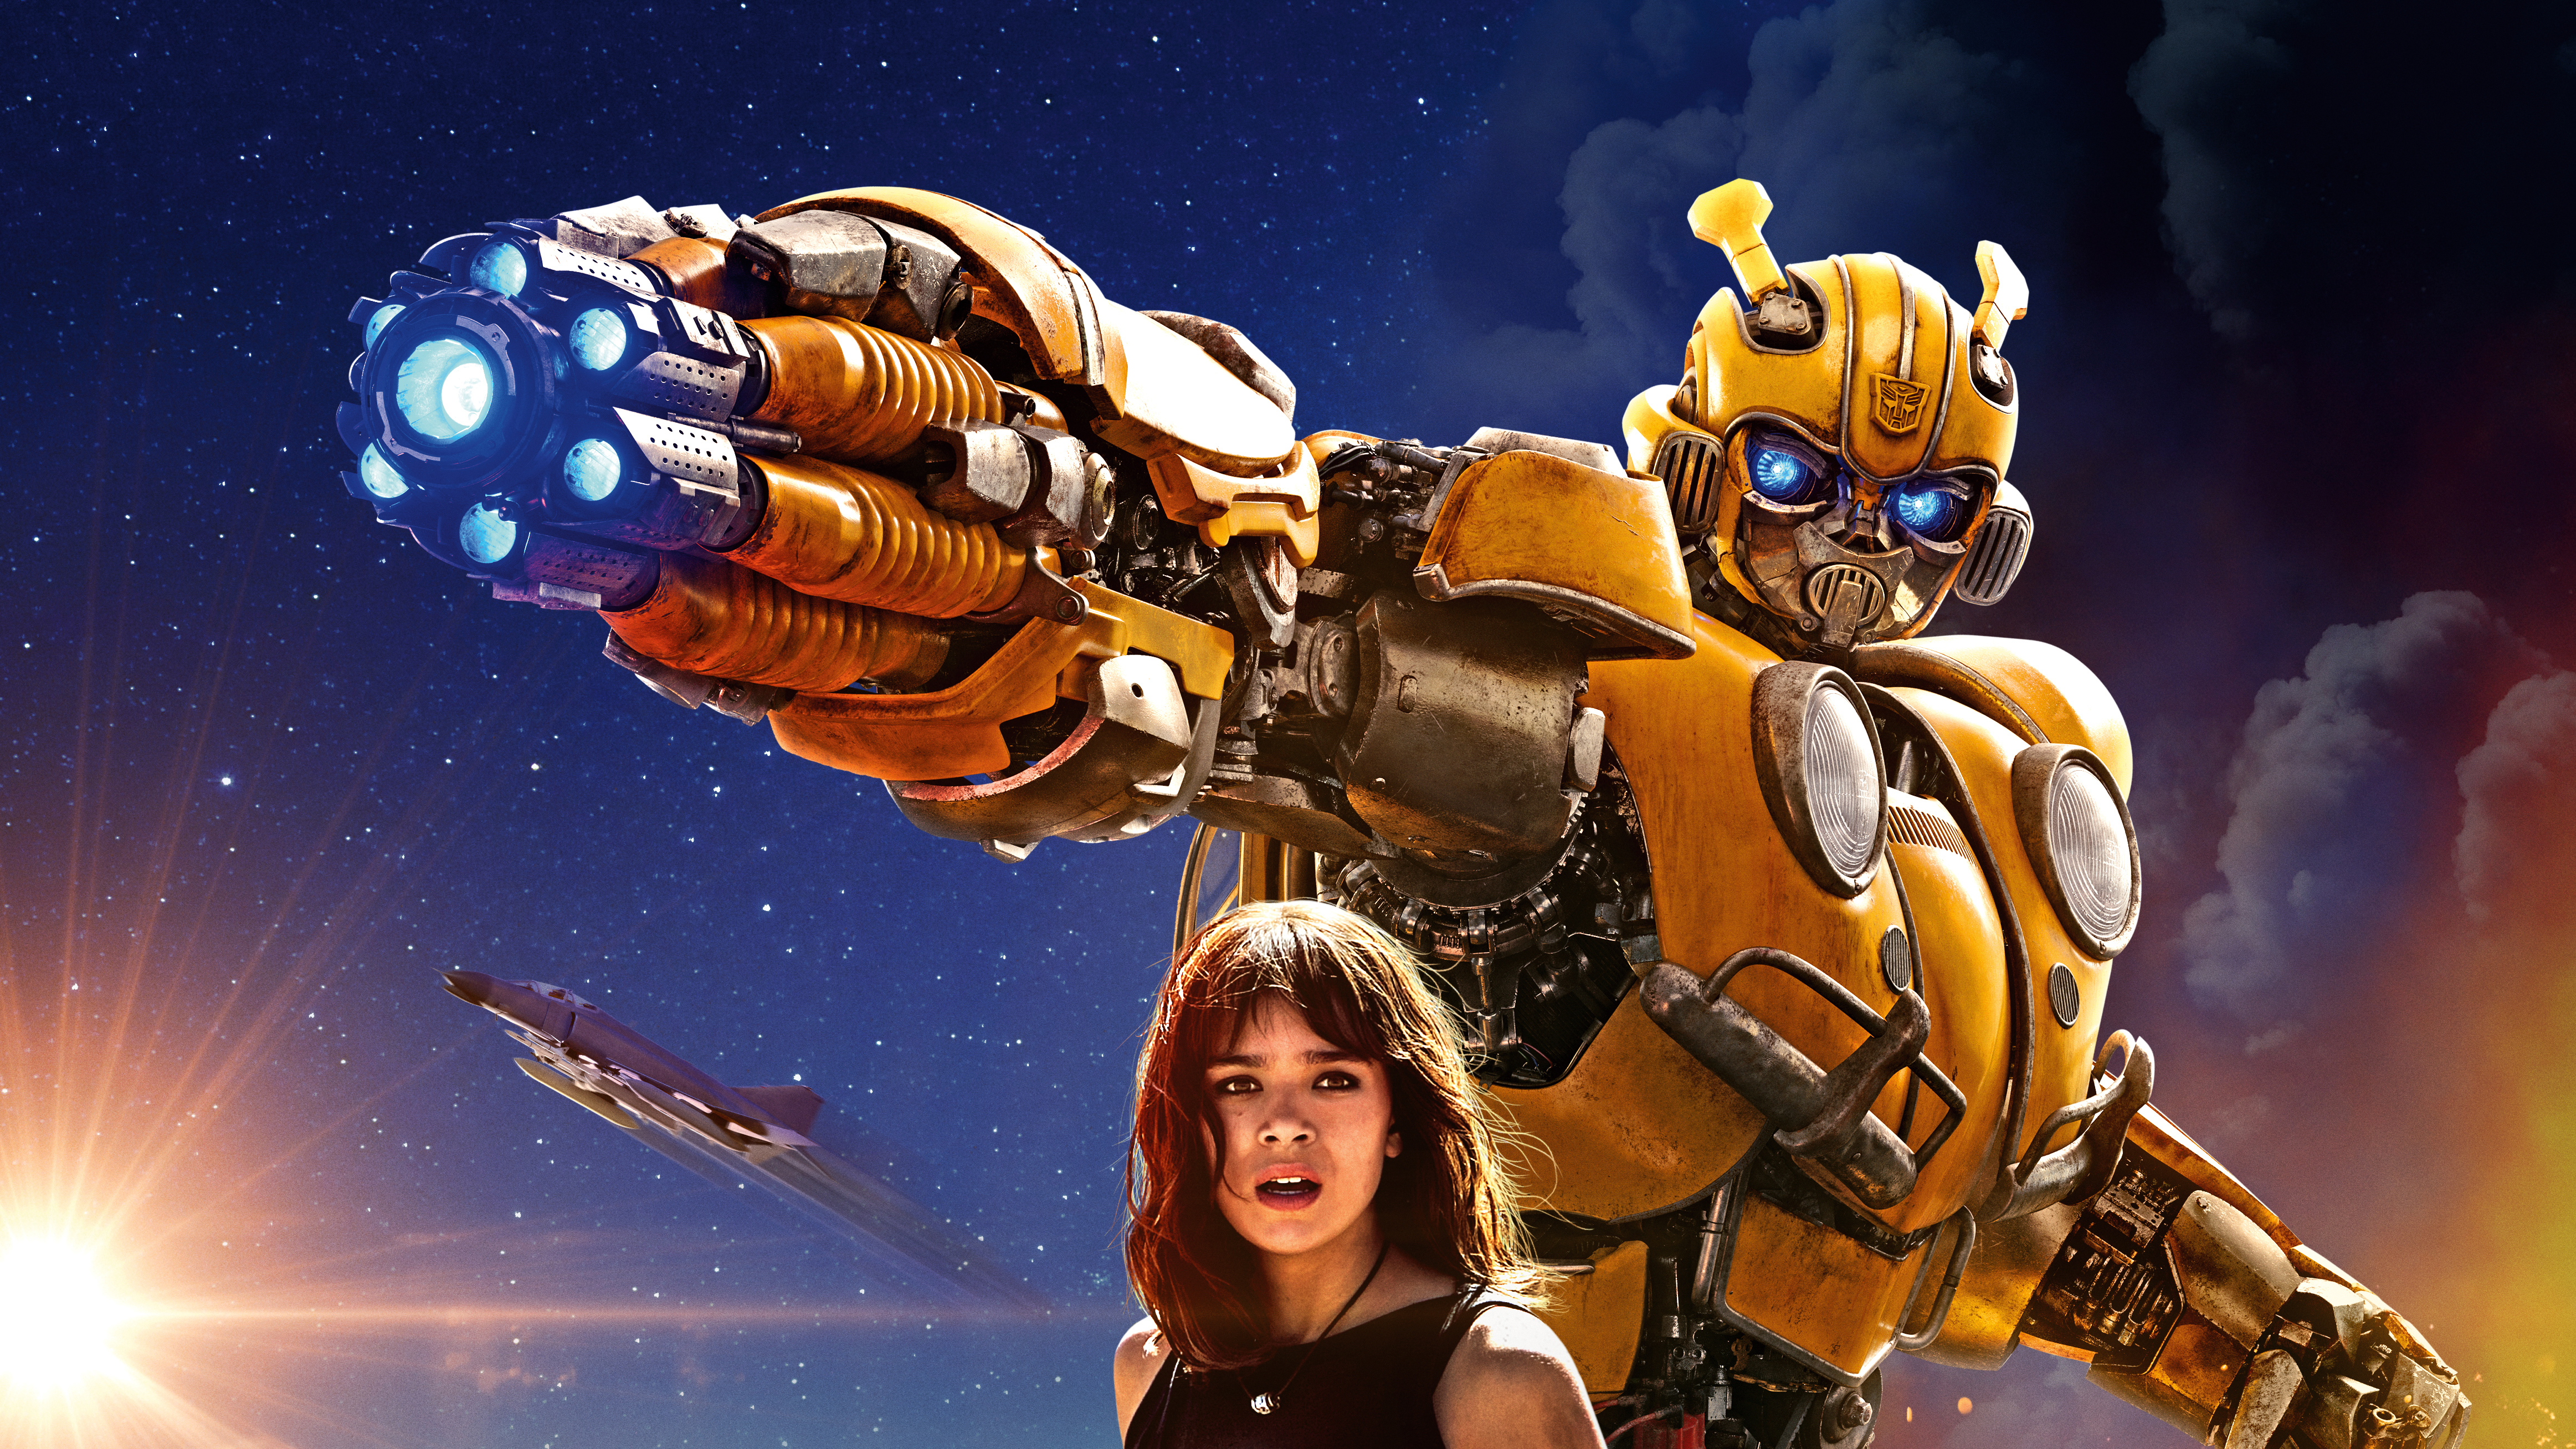 bumblebee (transformers), movie, bumblebee, hailee steinfeld